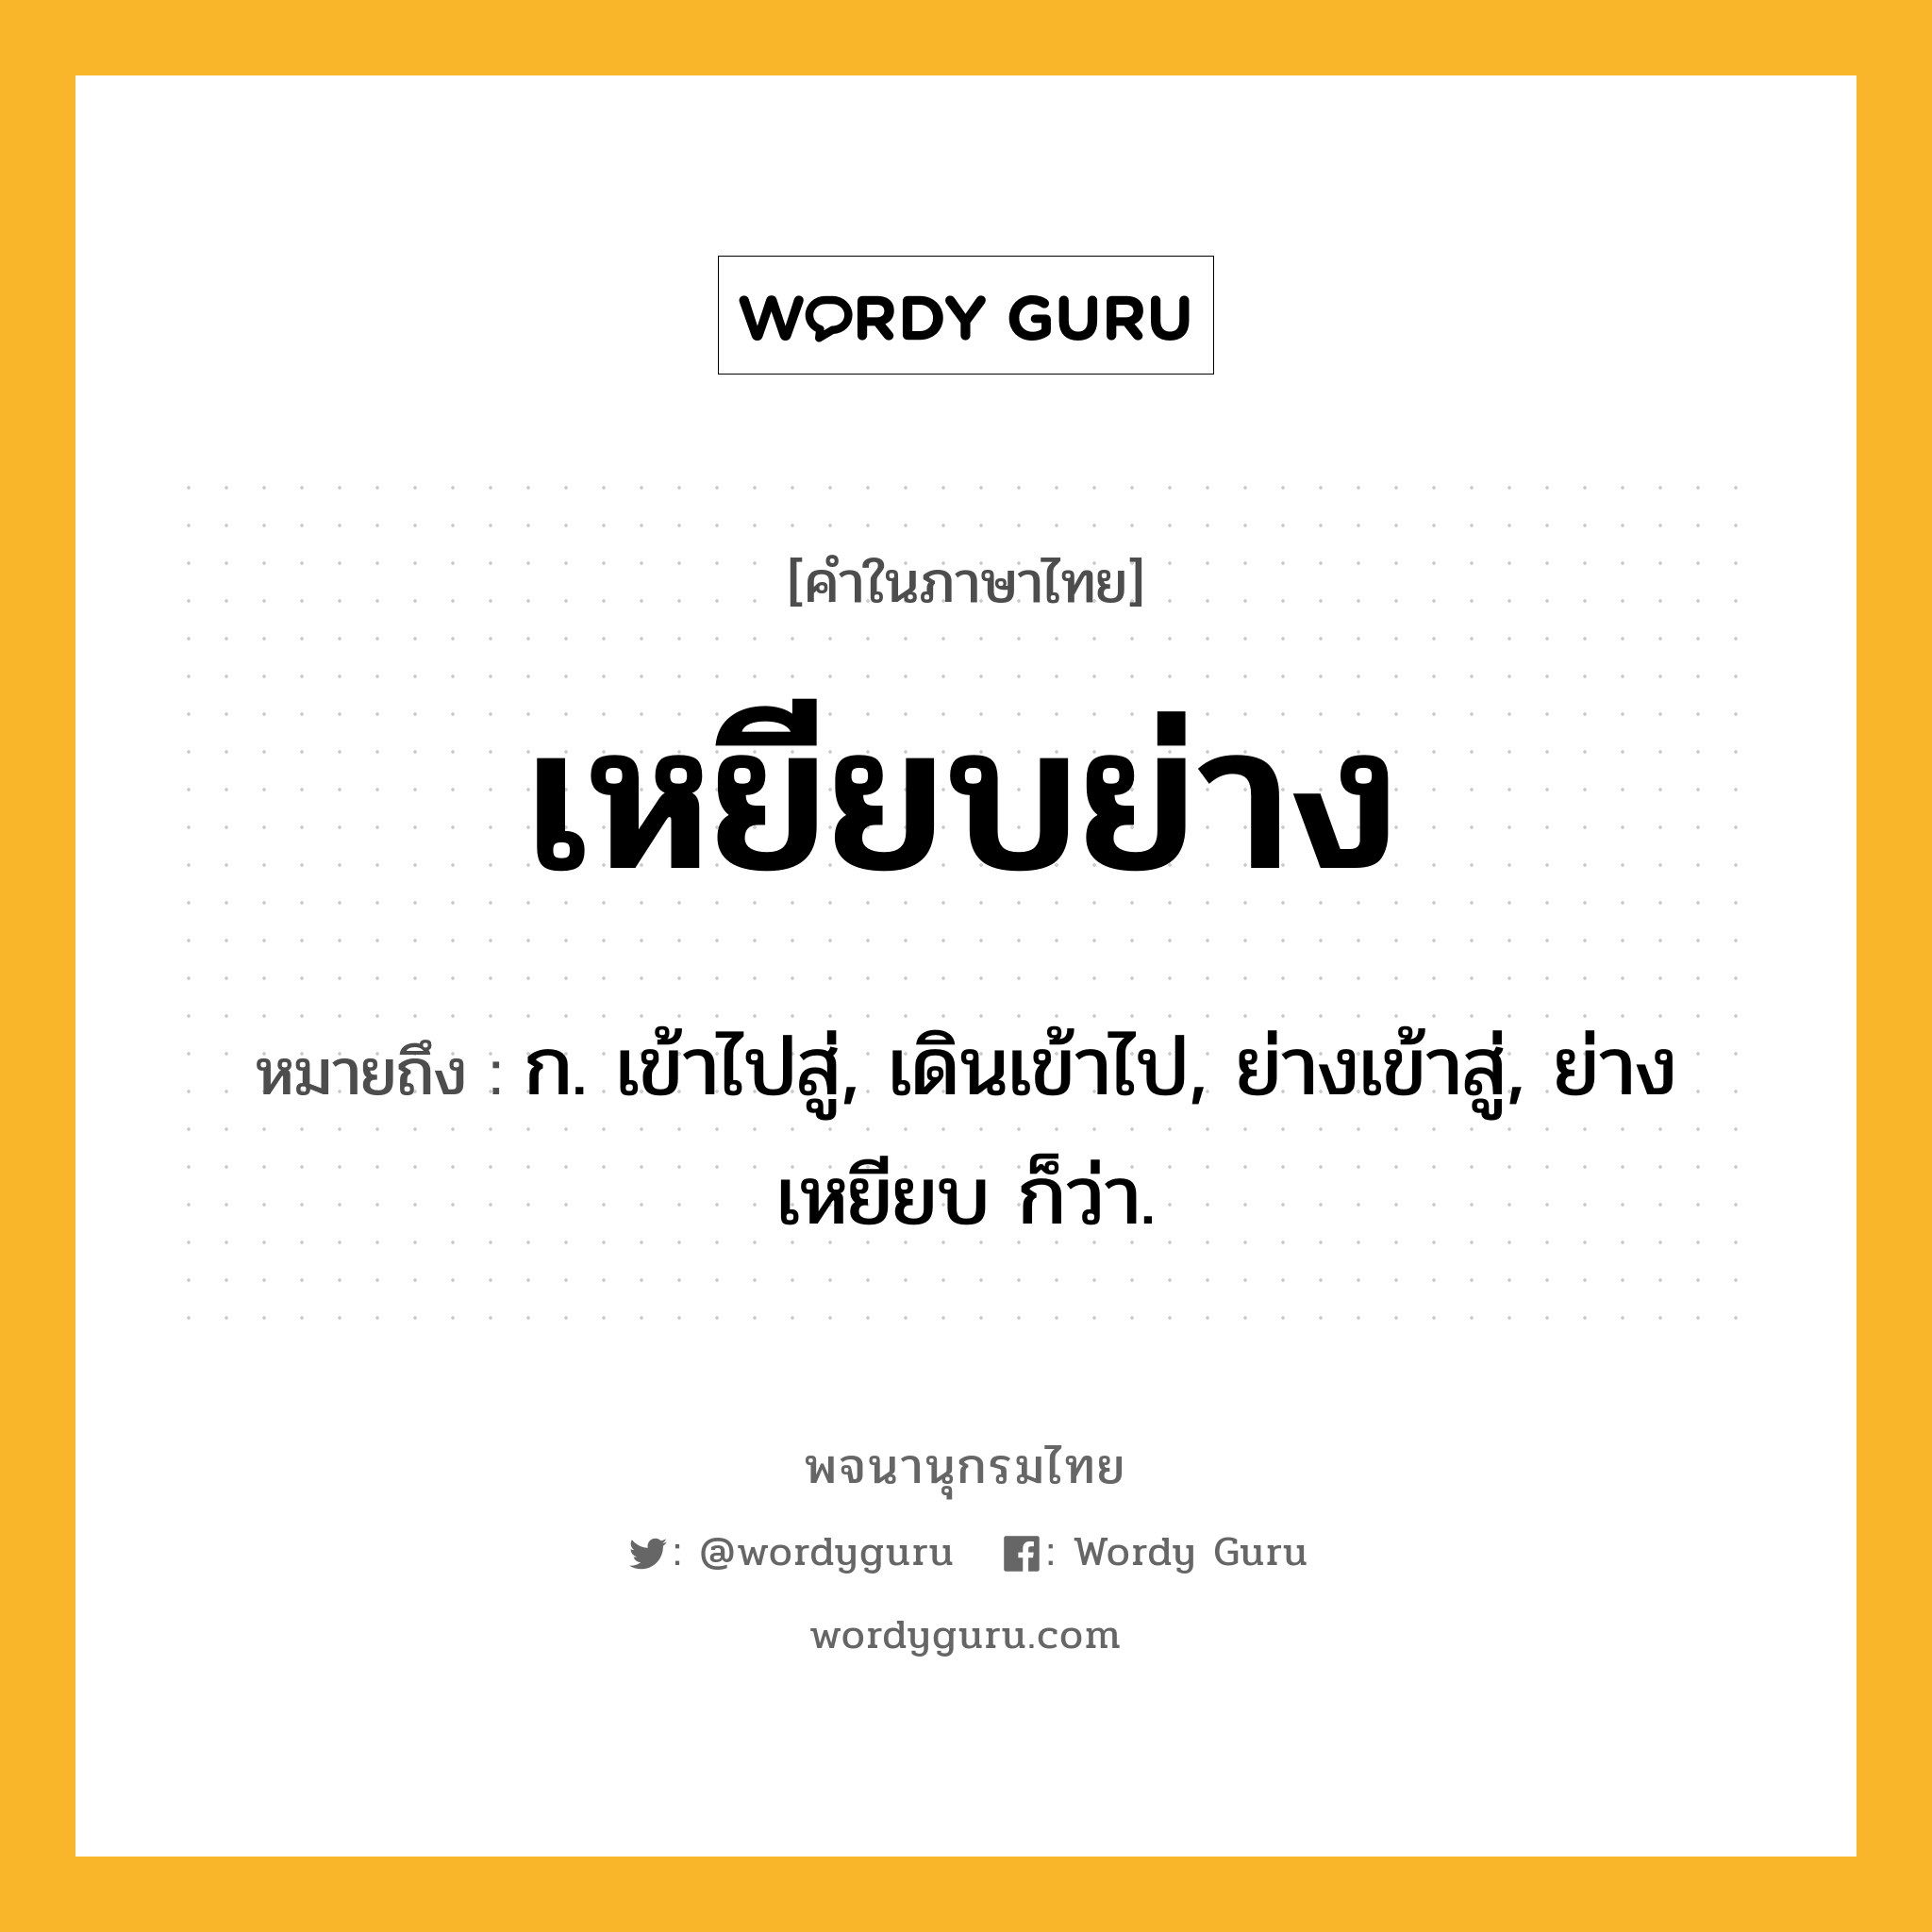 เหยียบย่าง หมายถึงอะไร?, คำในภาษาไทย เหยียบย่าง หมายถึง ก. เข้าไปสู่, เดินเข้าไป, ย่างเข้าสู่, ย่างเหยียบ ก็ว่า.